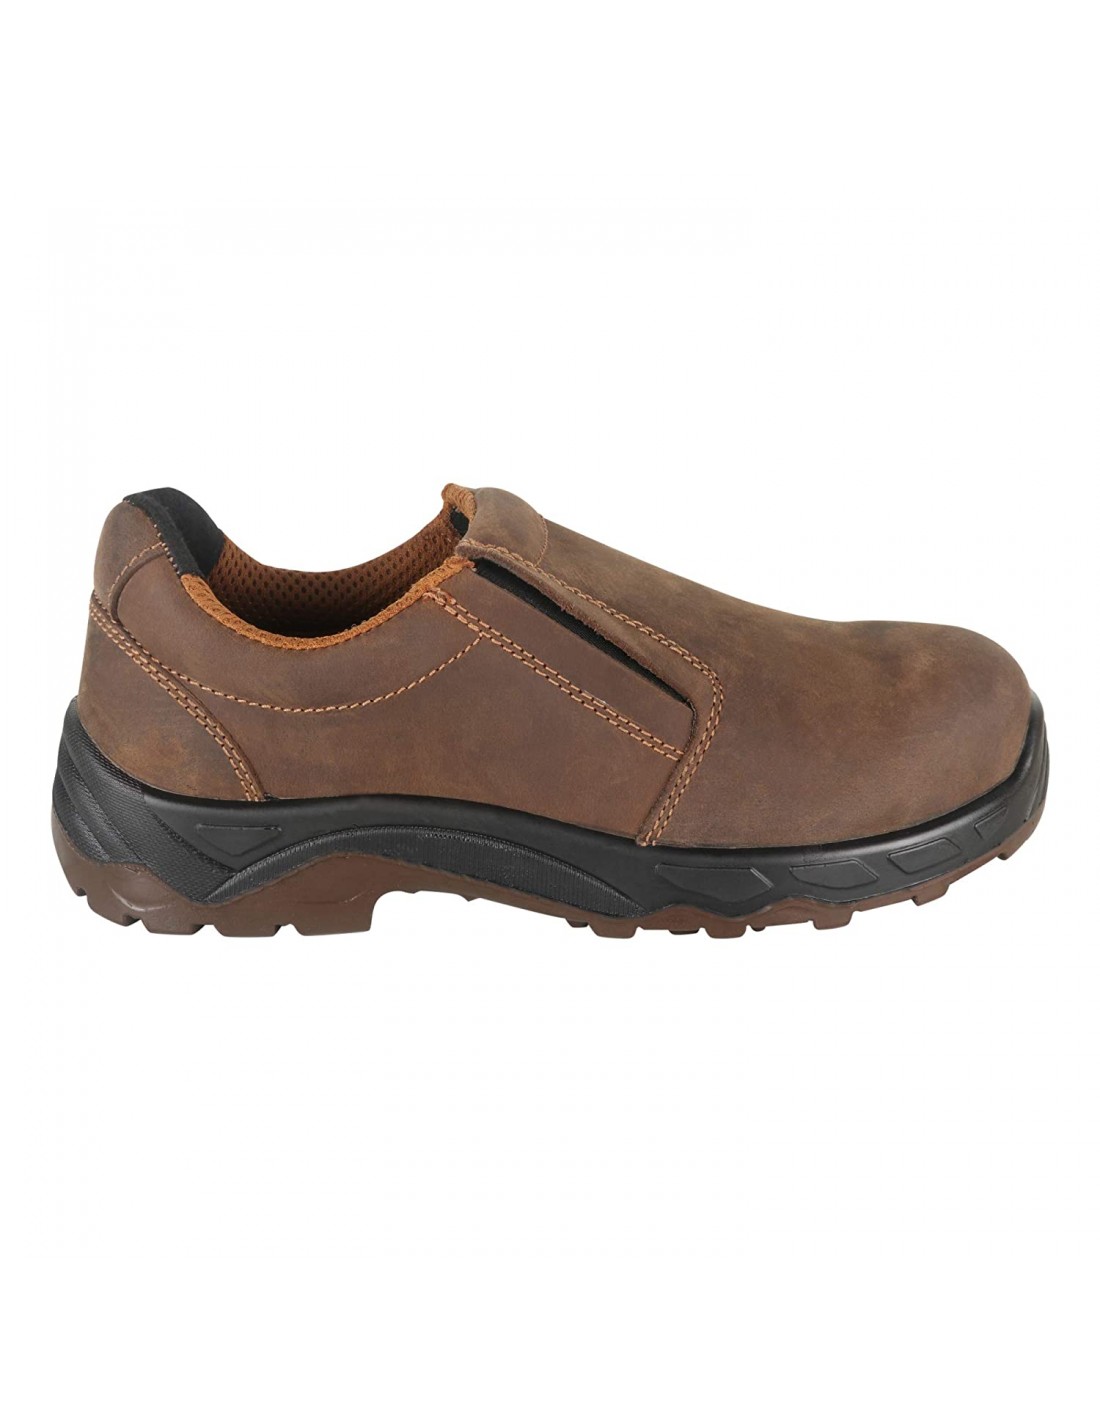 ZM BOSTON 82-349 Slip-on Safety Shoe, EN Certified 200J Composite Toe ...